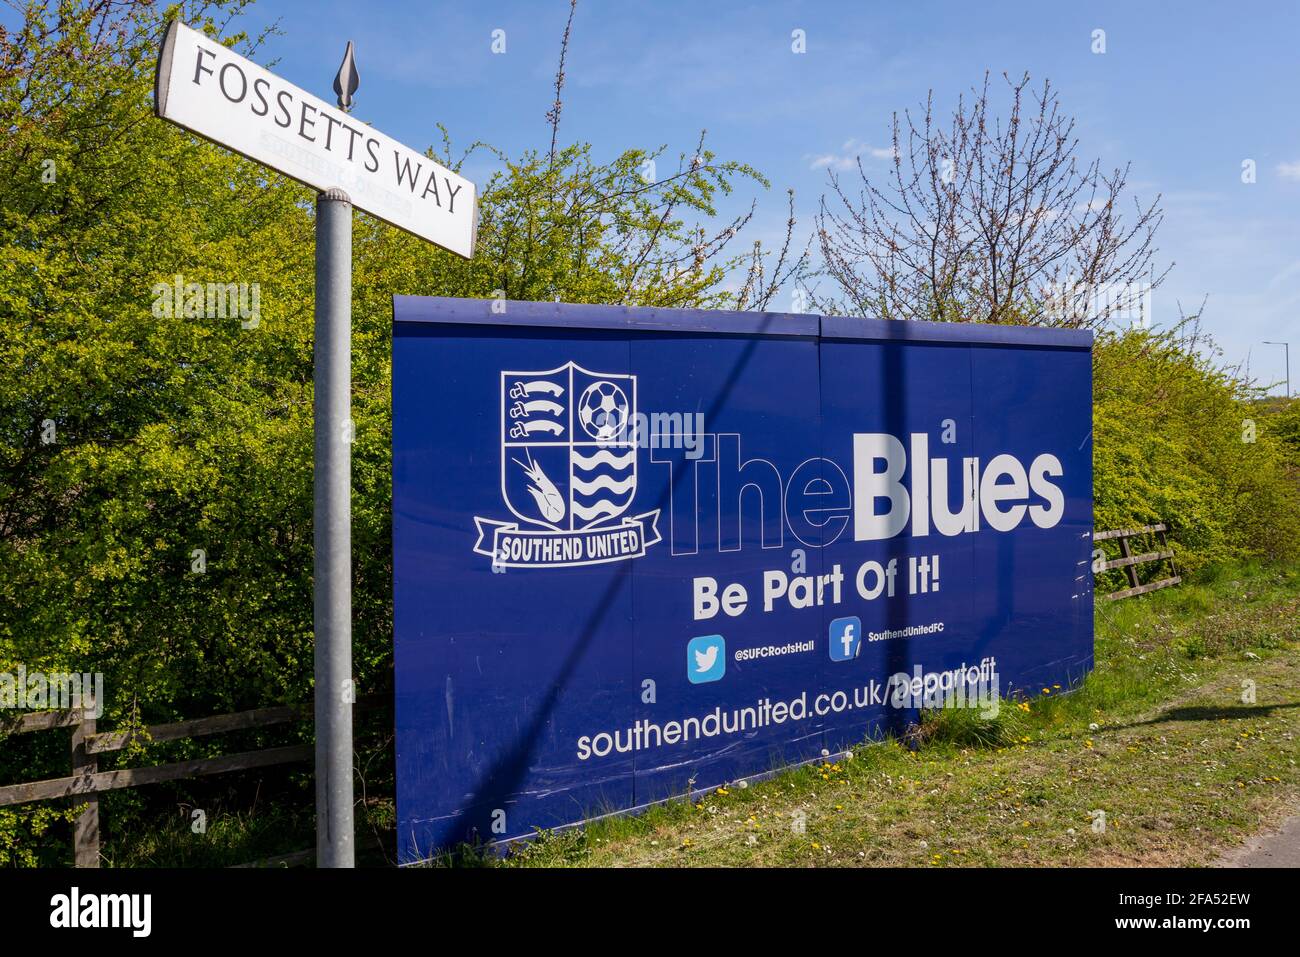 Chantier de construction de palissades autour de la proposition de Southend Utd football club nouveau terrain d'entraînement de stade à Fossetts Way, Fossetts Farm. Panneau d'affichage, avec texte Banque D'Images